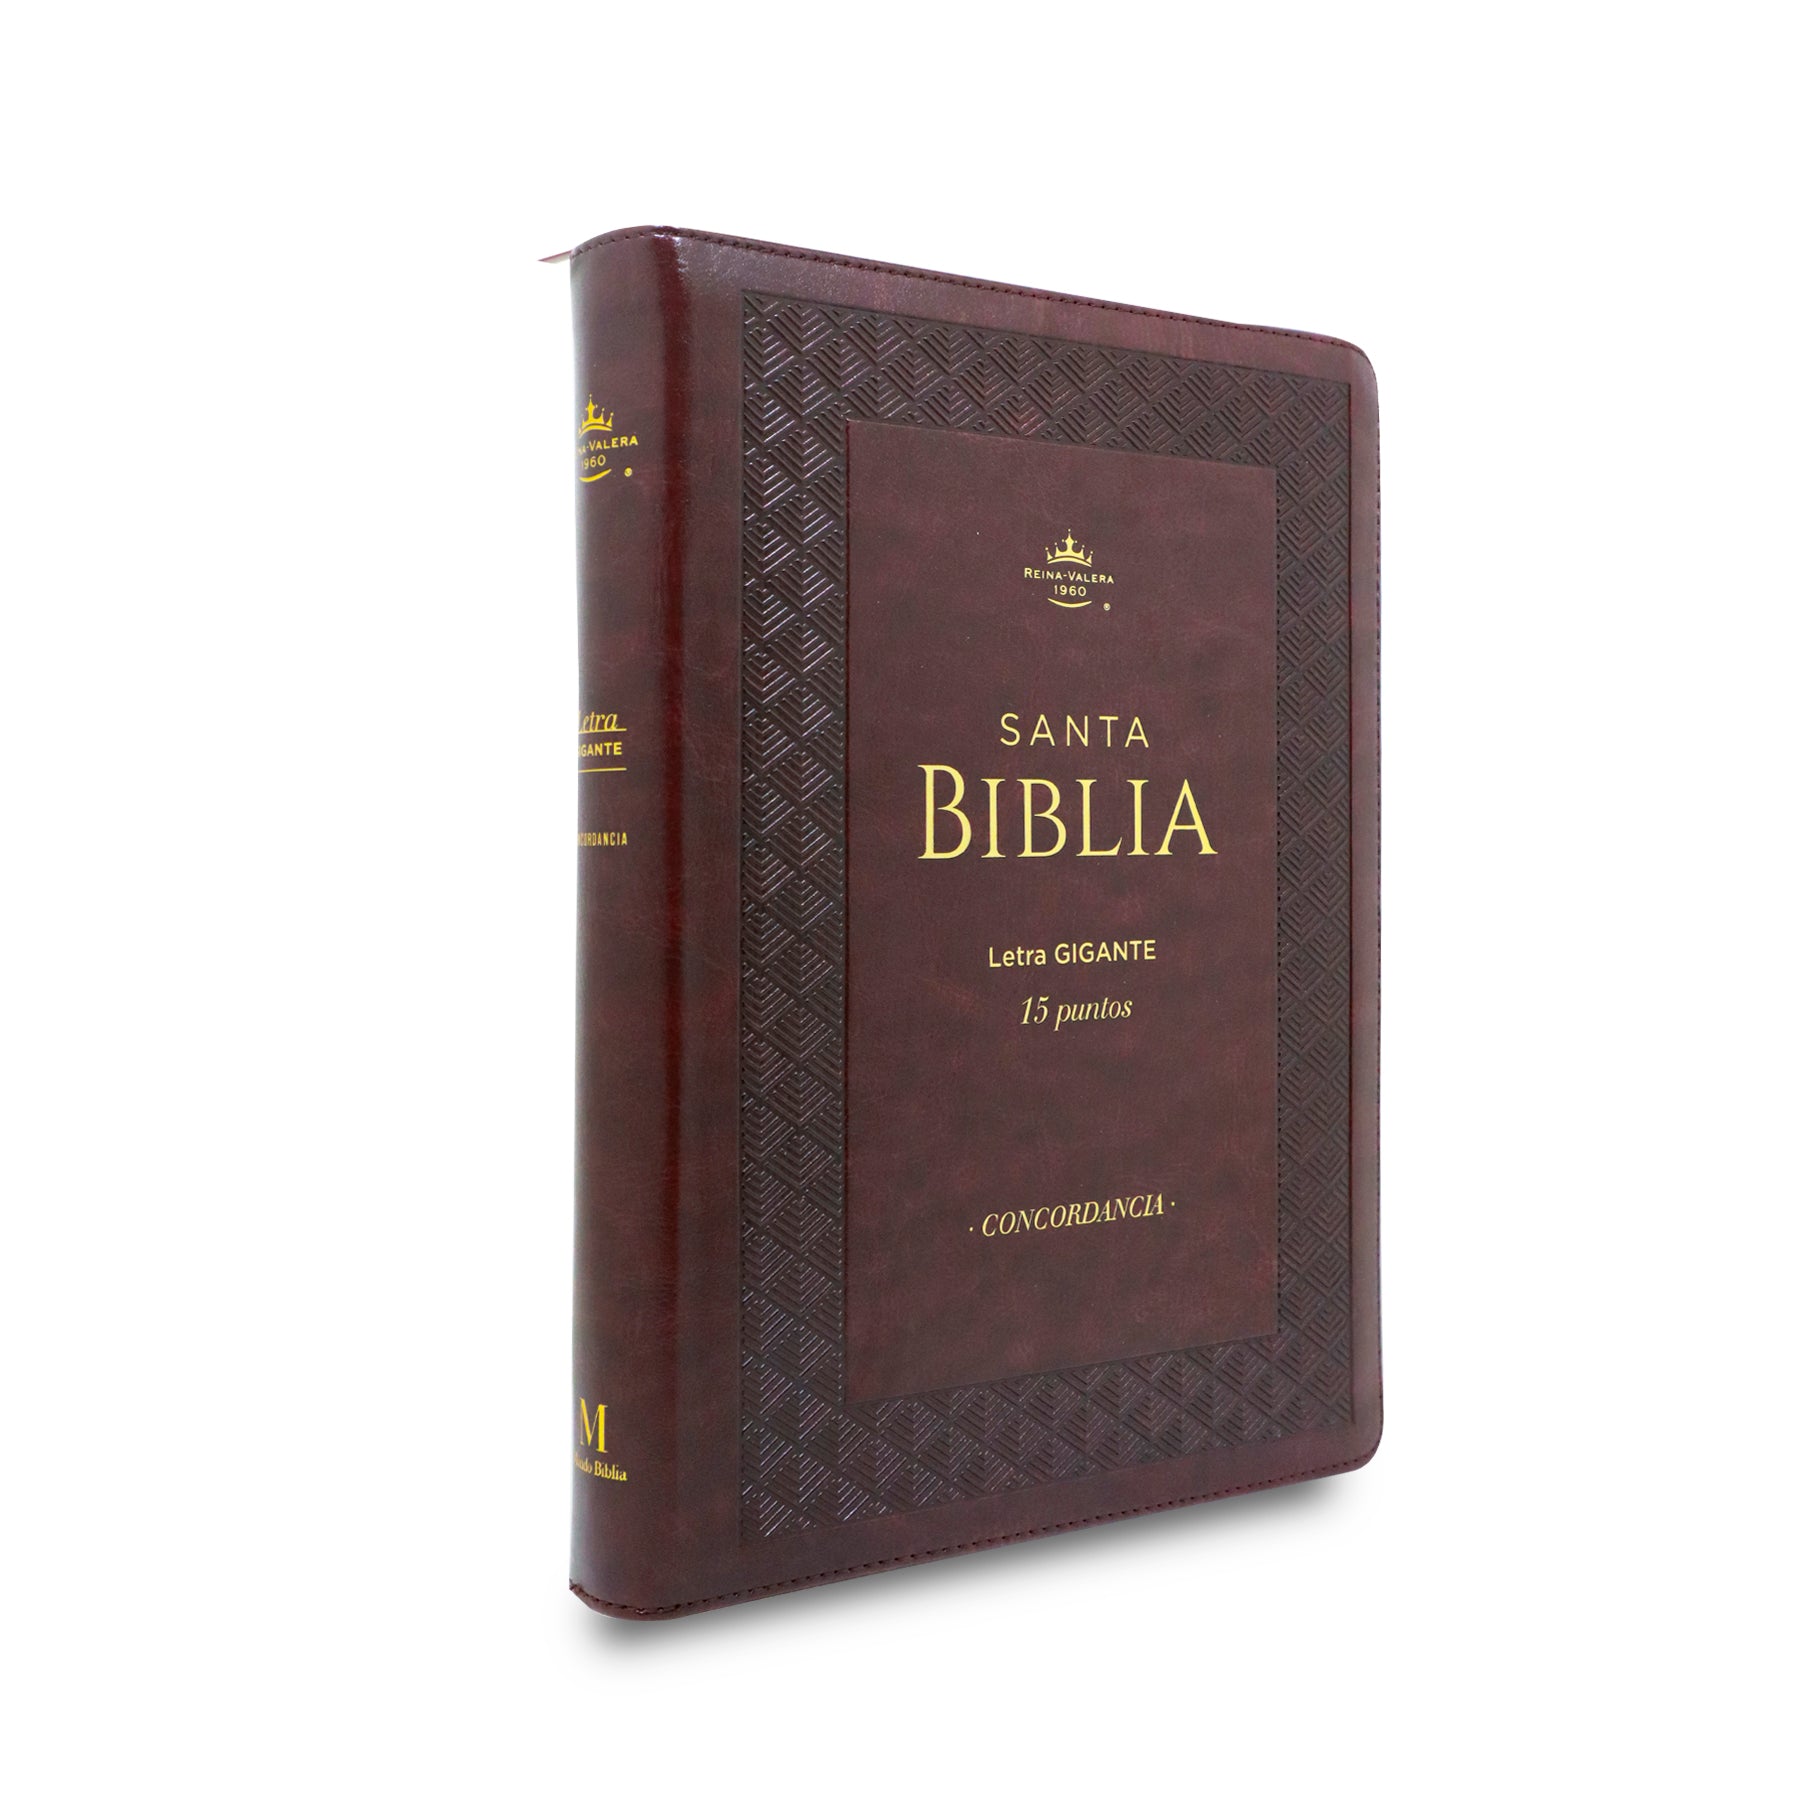 BIBLIA RVR 1960 GIGANTE RELIEVE IMITACION PIEL CIERRE/INDICE